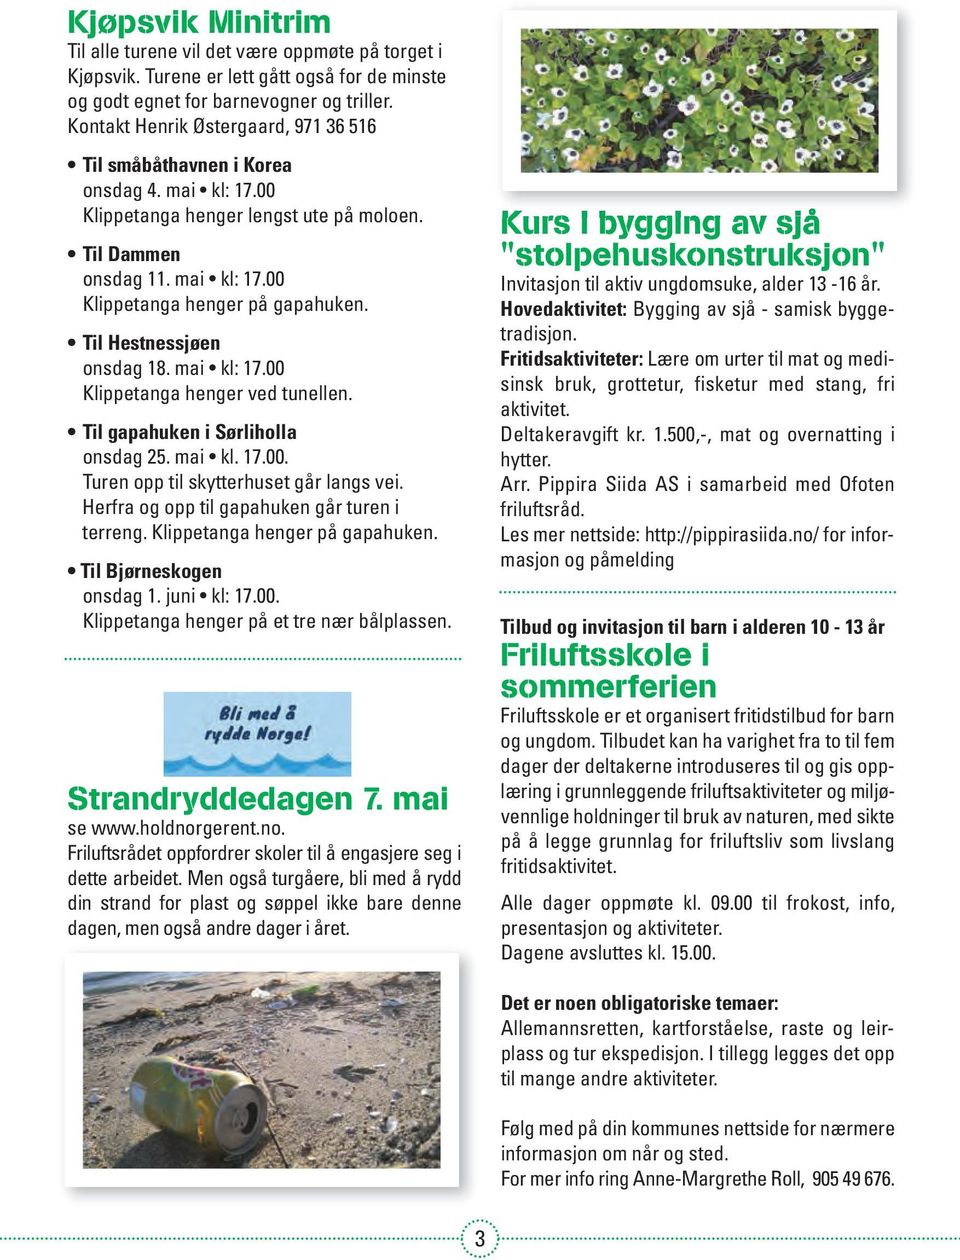 Til Hestnessjøen onsdag 18. mai kl: 17.00 Klippetanga henger ved tunellen. Til gapahuken i Sørliholla onsdag 25. mai kl. 17.00. Turen opp til skytterhuset går langs vei.